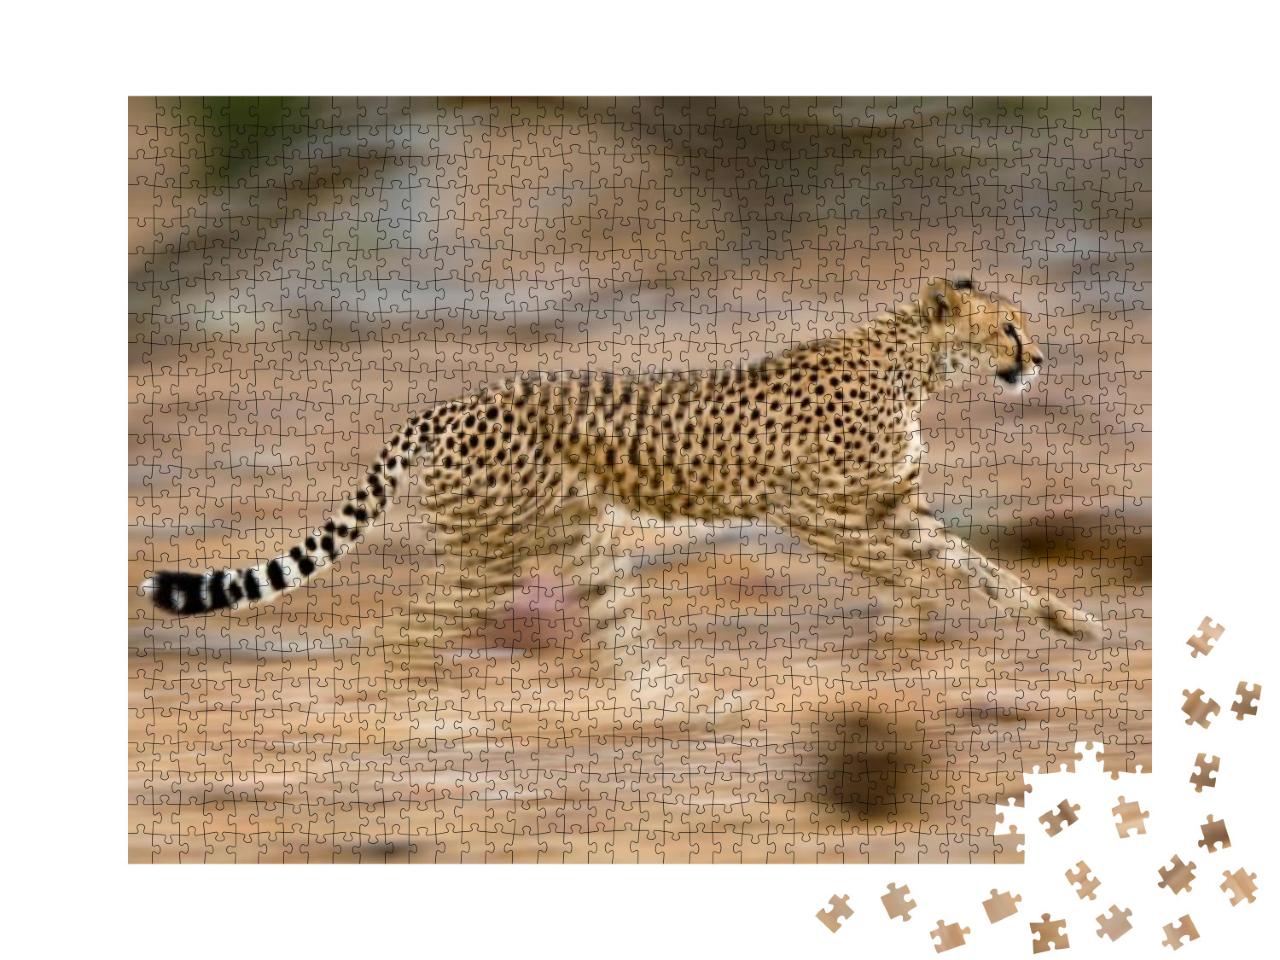 Puzzle 1000 Teile „Junger Gepard im schnellen Lauf “